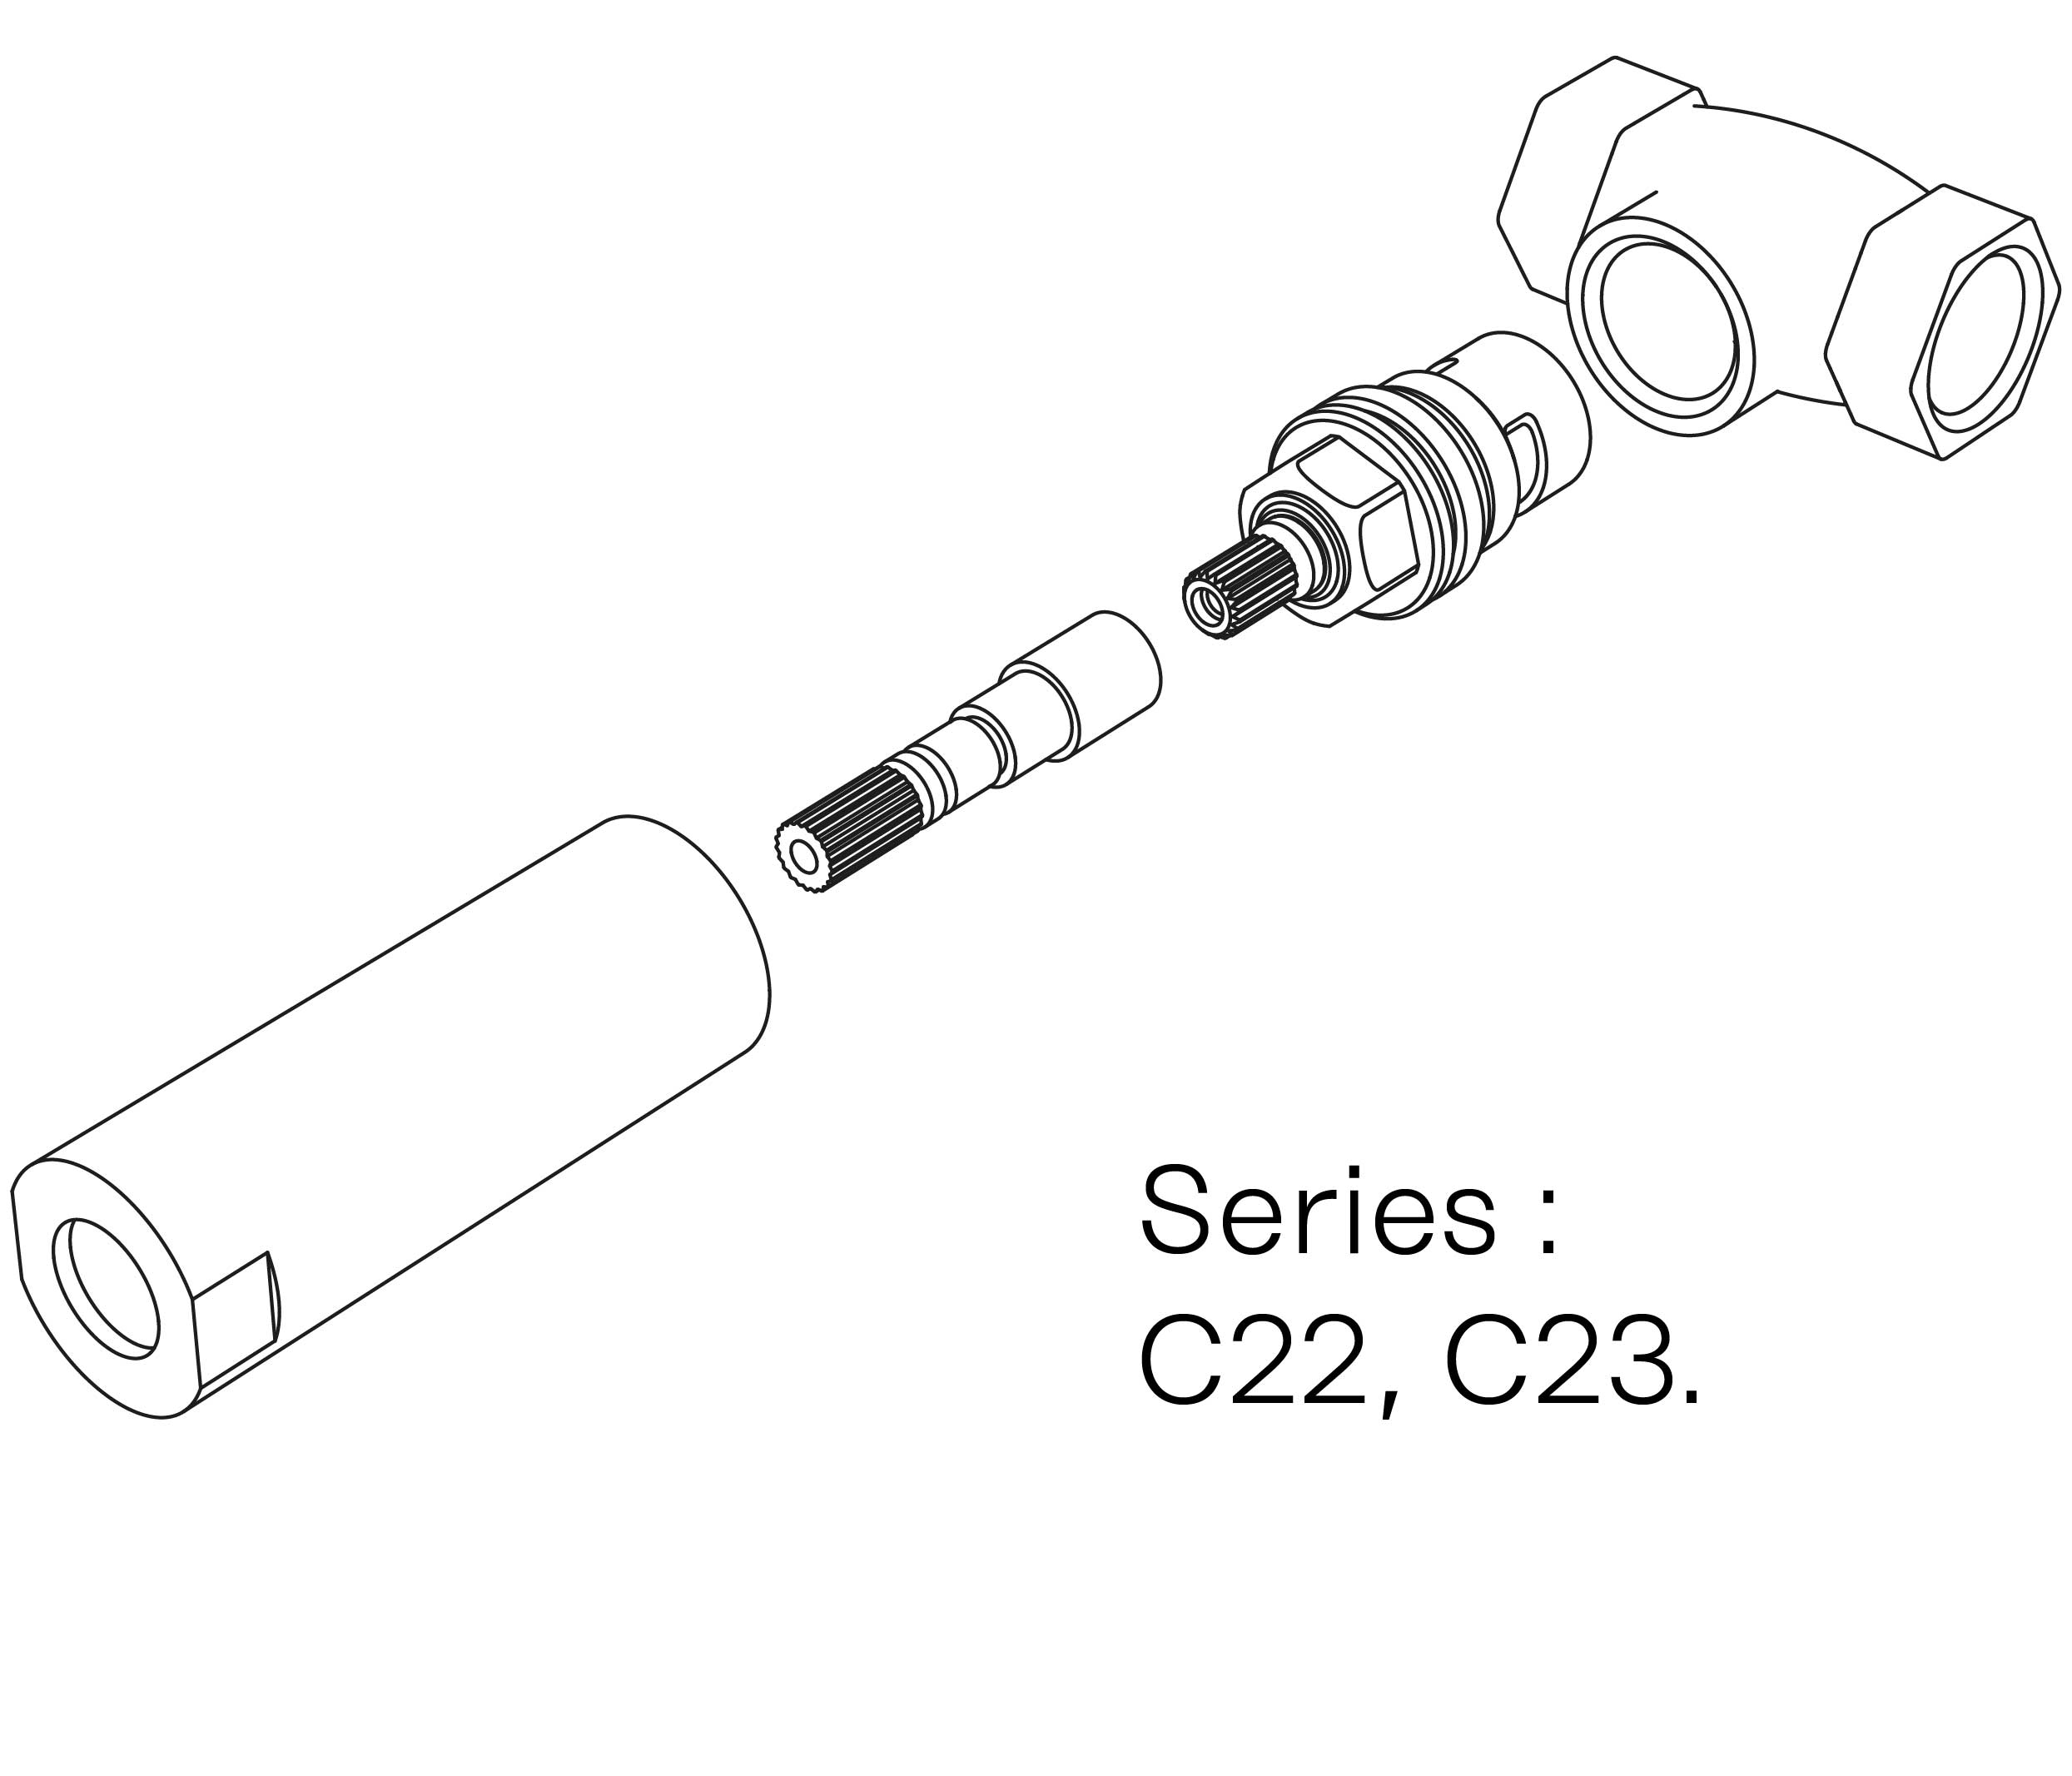 C00-21K29H Kit #1 for W-M valve 3/4″, 1/4 turn, Left